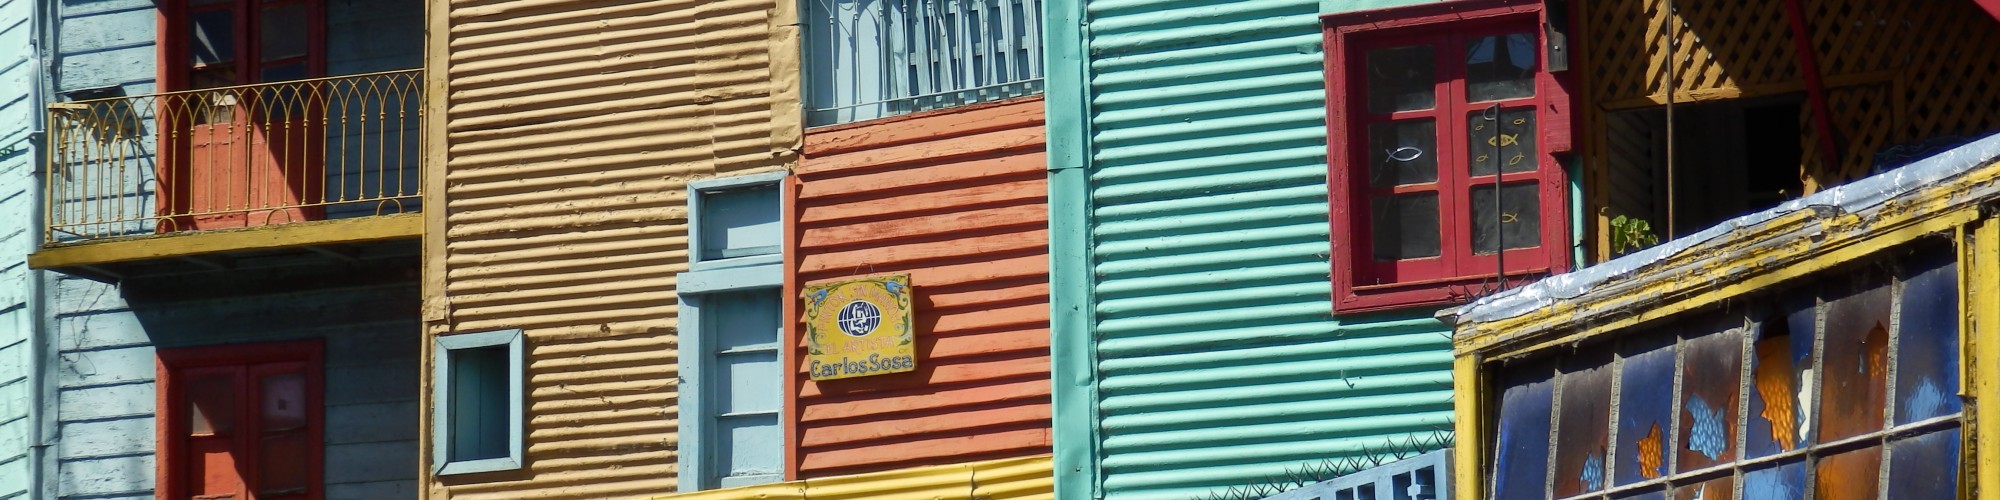 La Boca, Buenos Aires